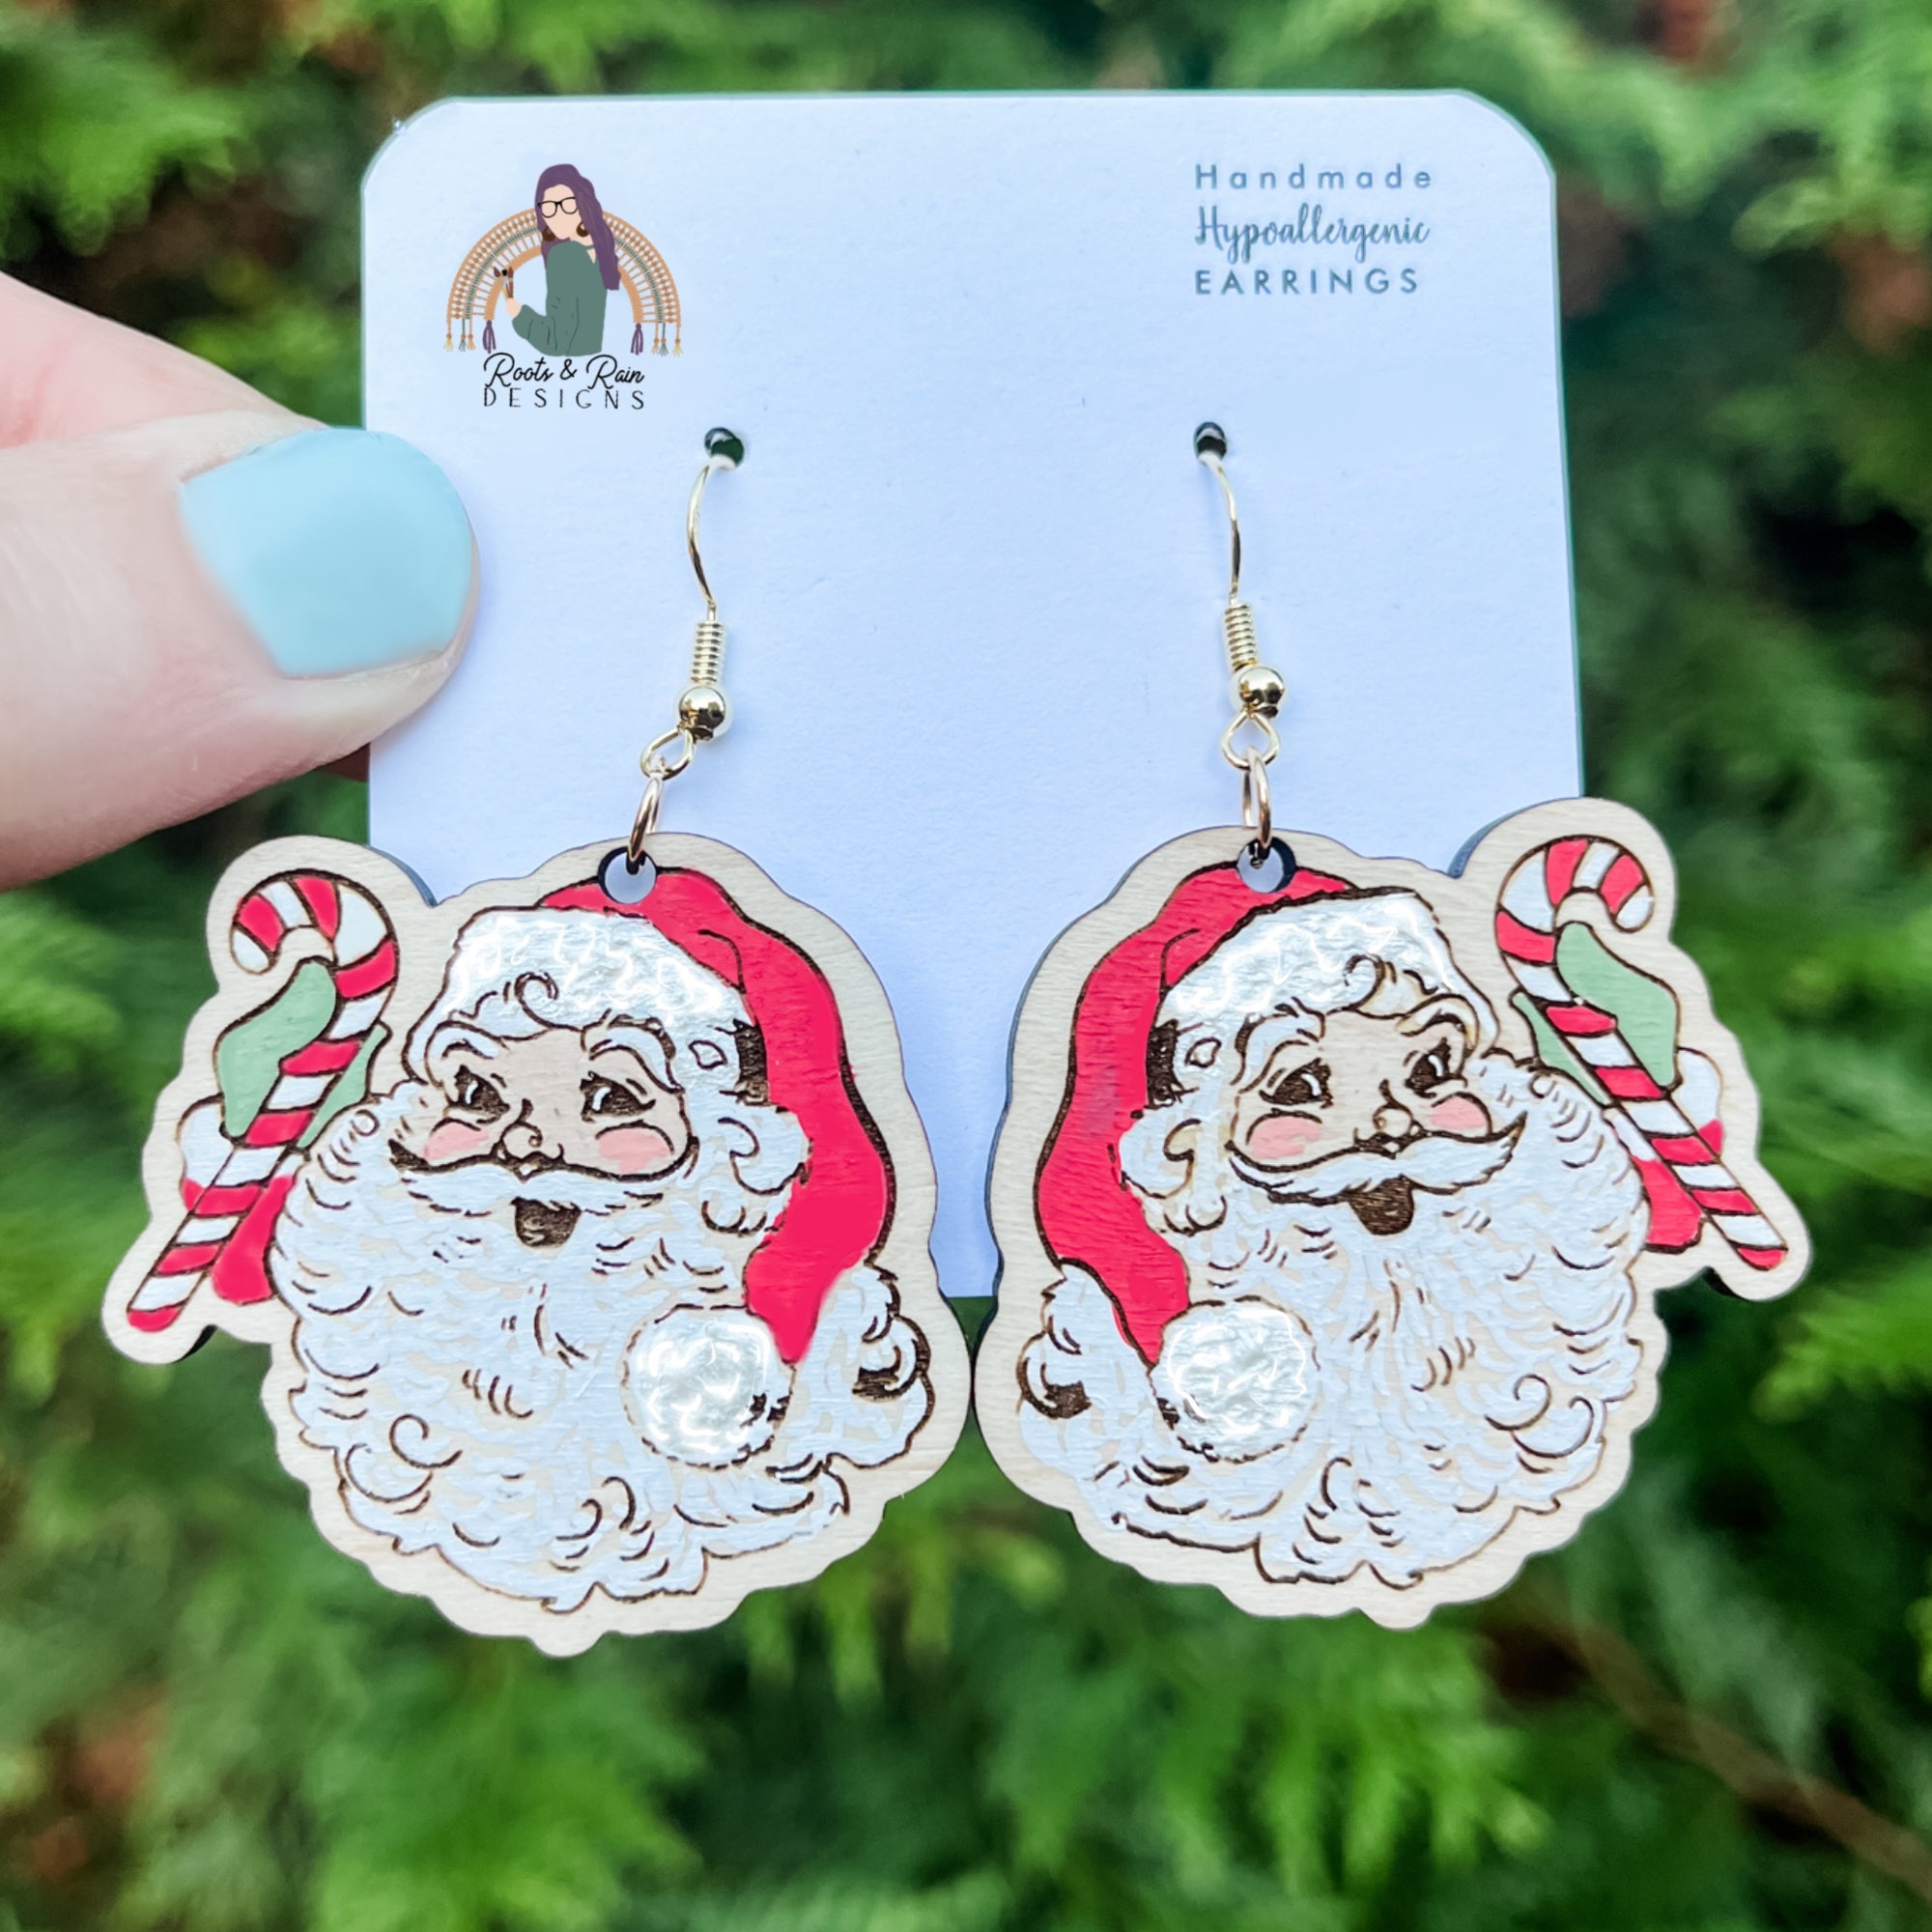 Vintage Santa earrings